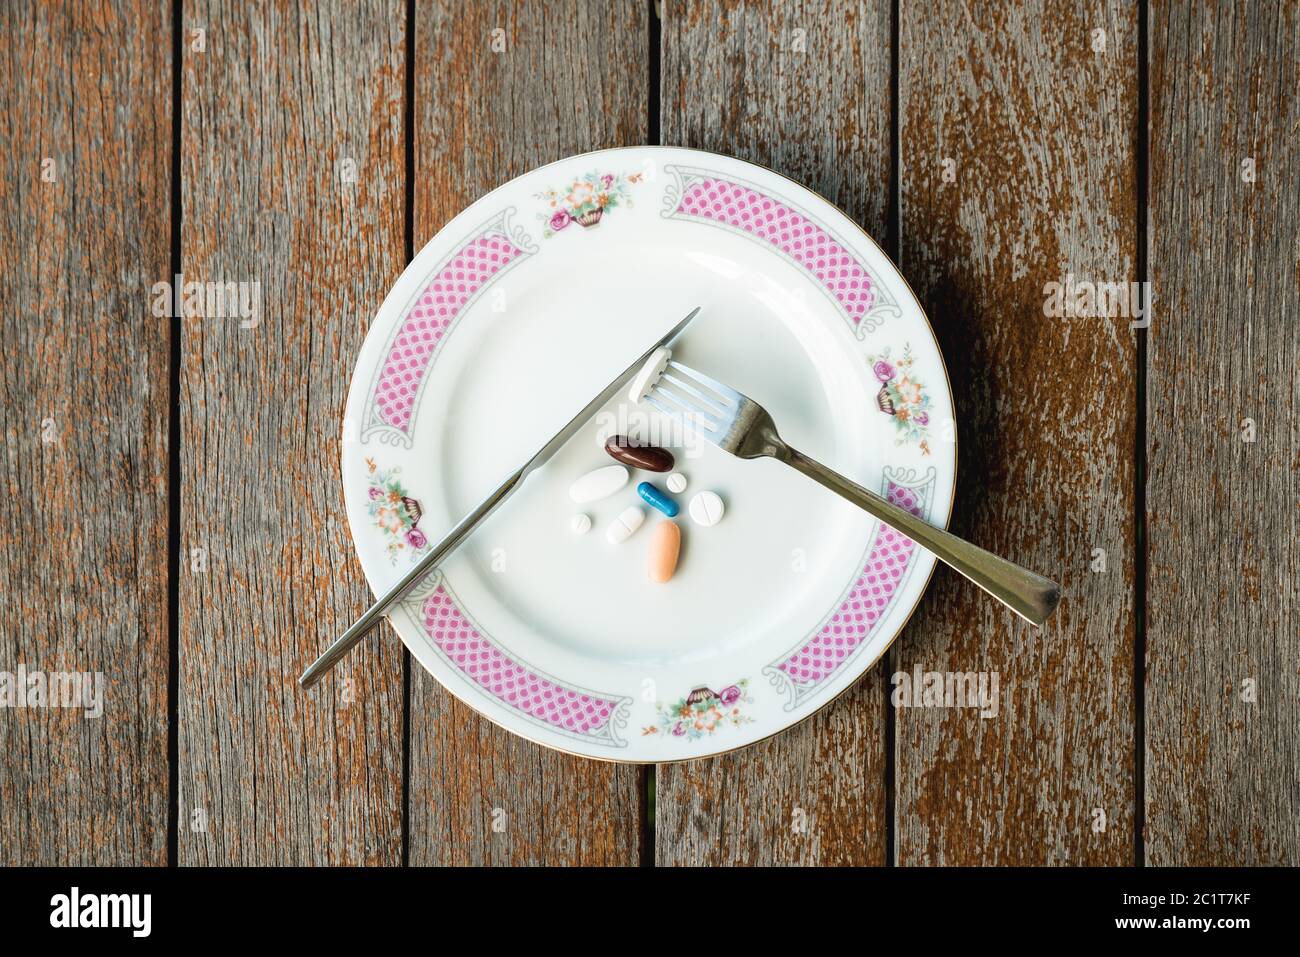 Pilules / médicaments servis au lieu d'un repas Banque D'Images